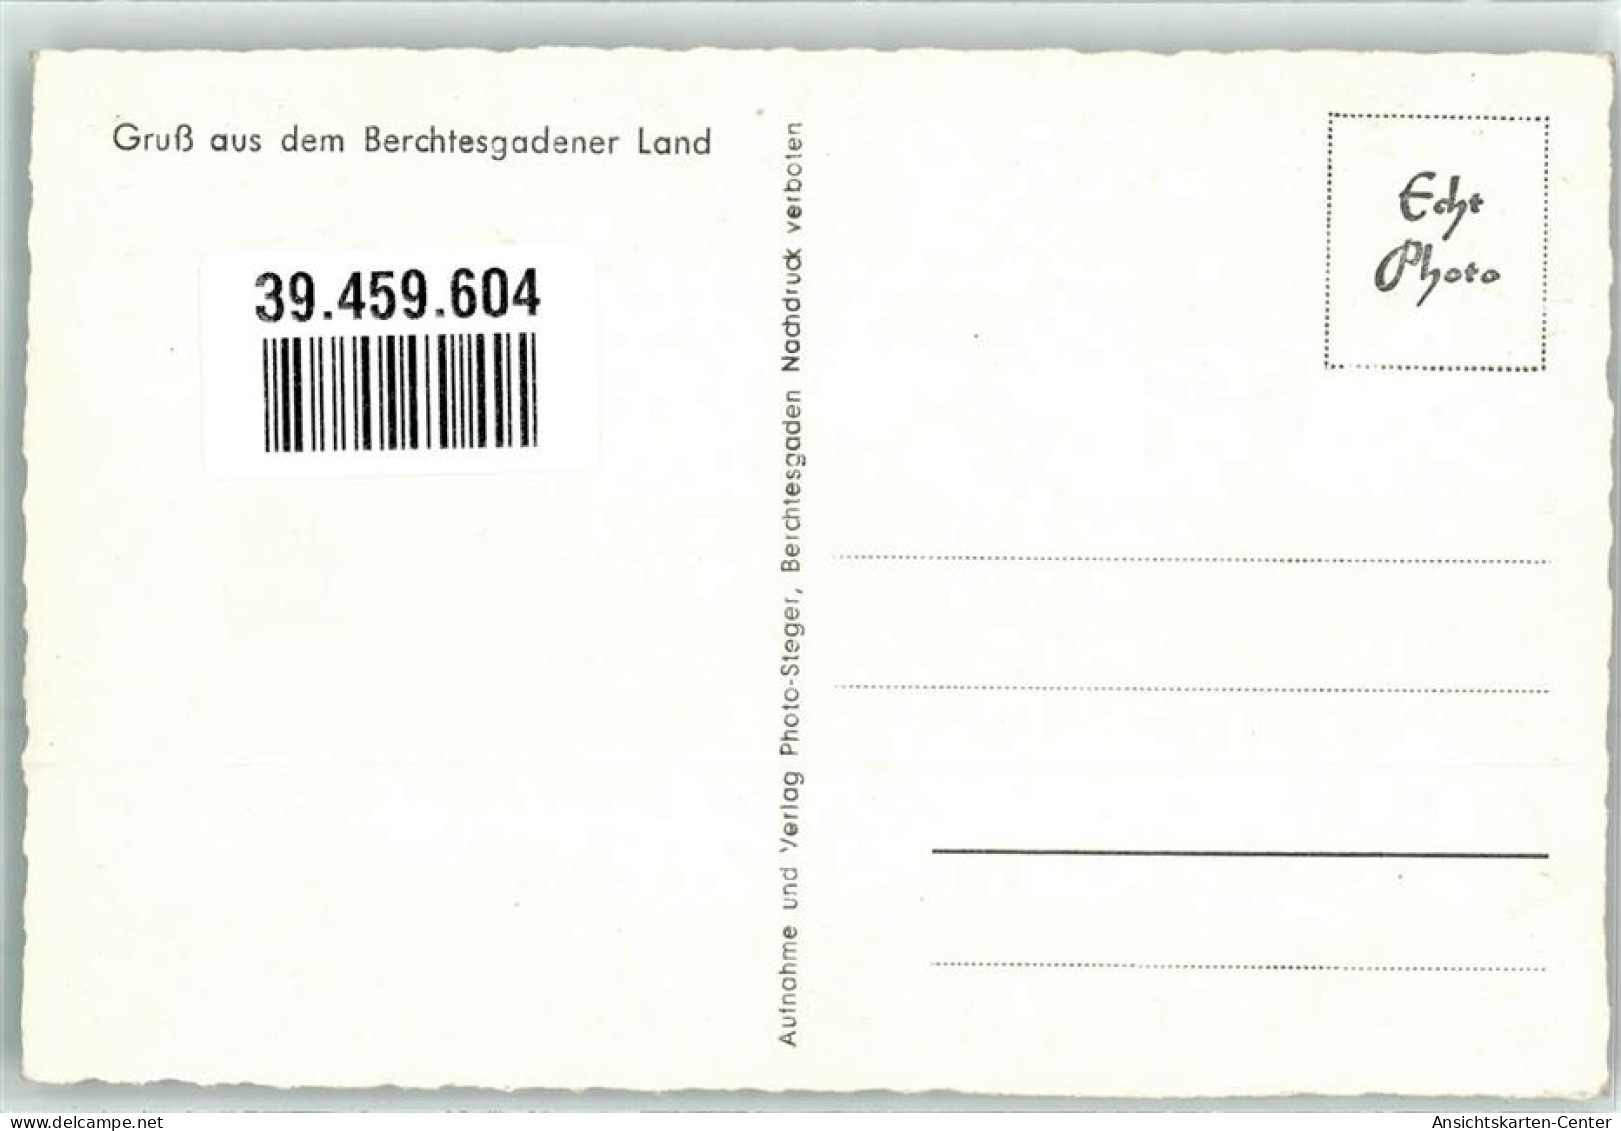 39459604 - Kehlsteinhaus - Berchtesgaden